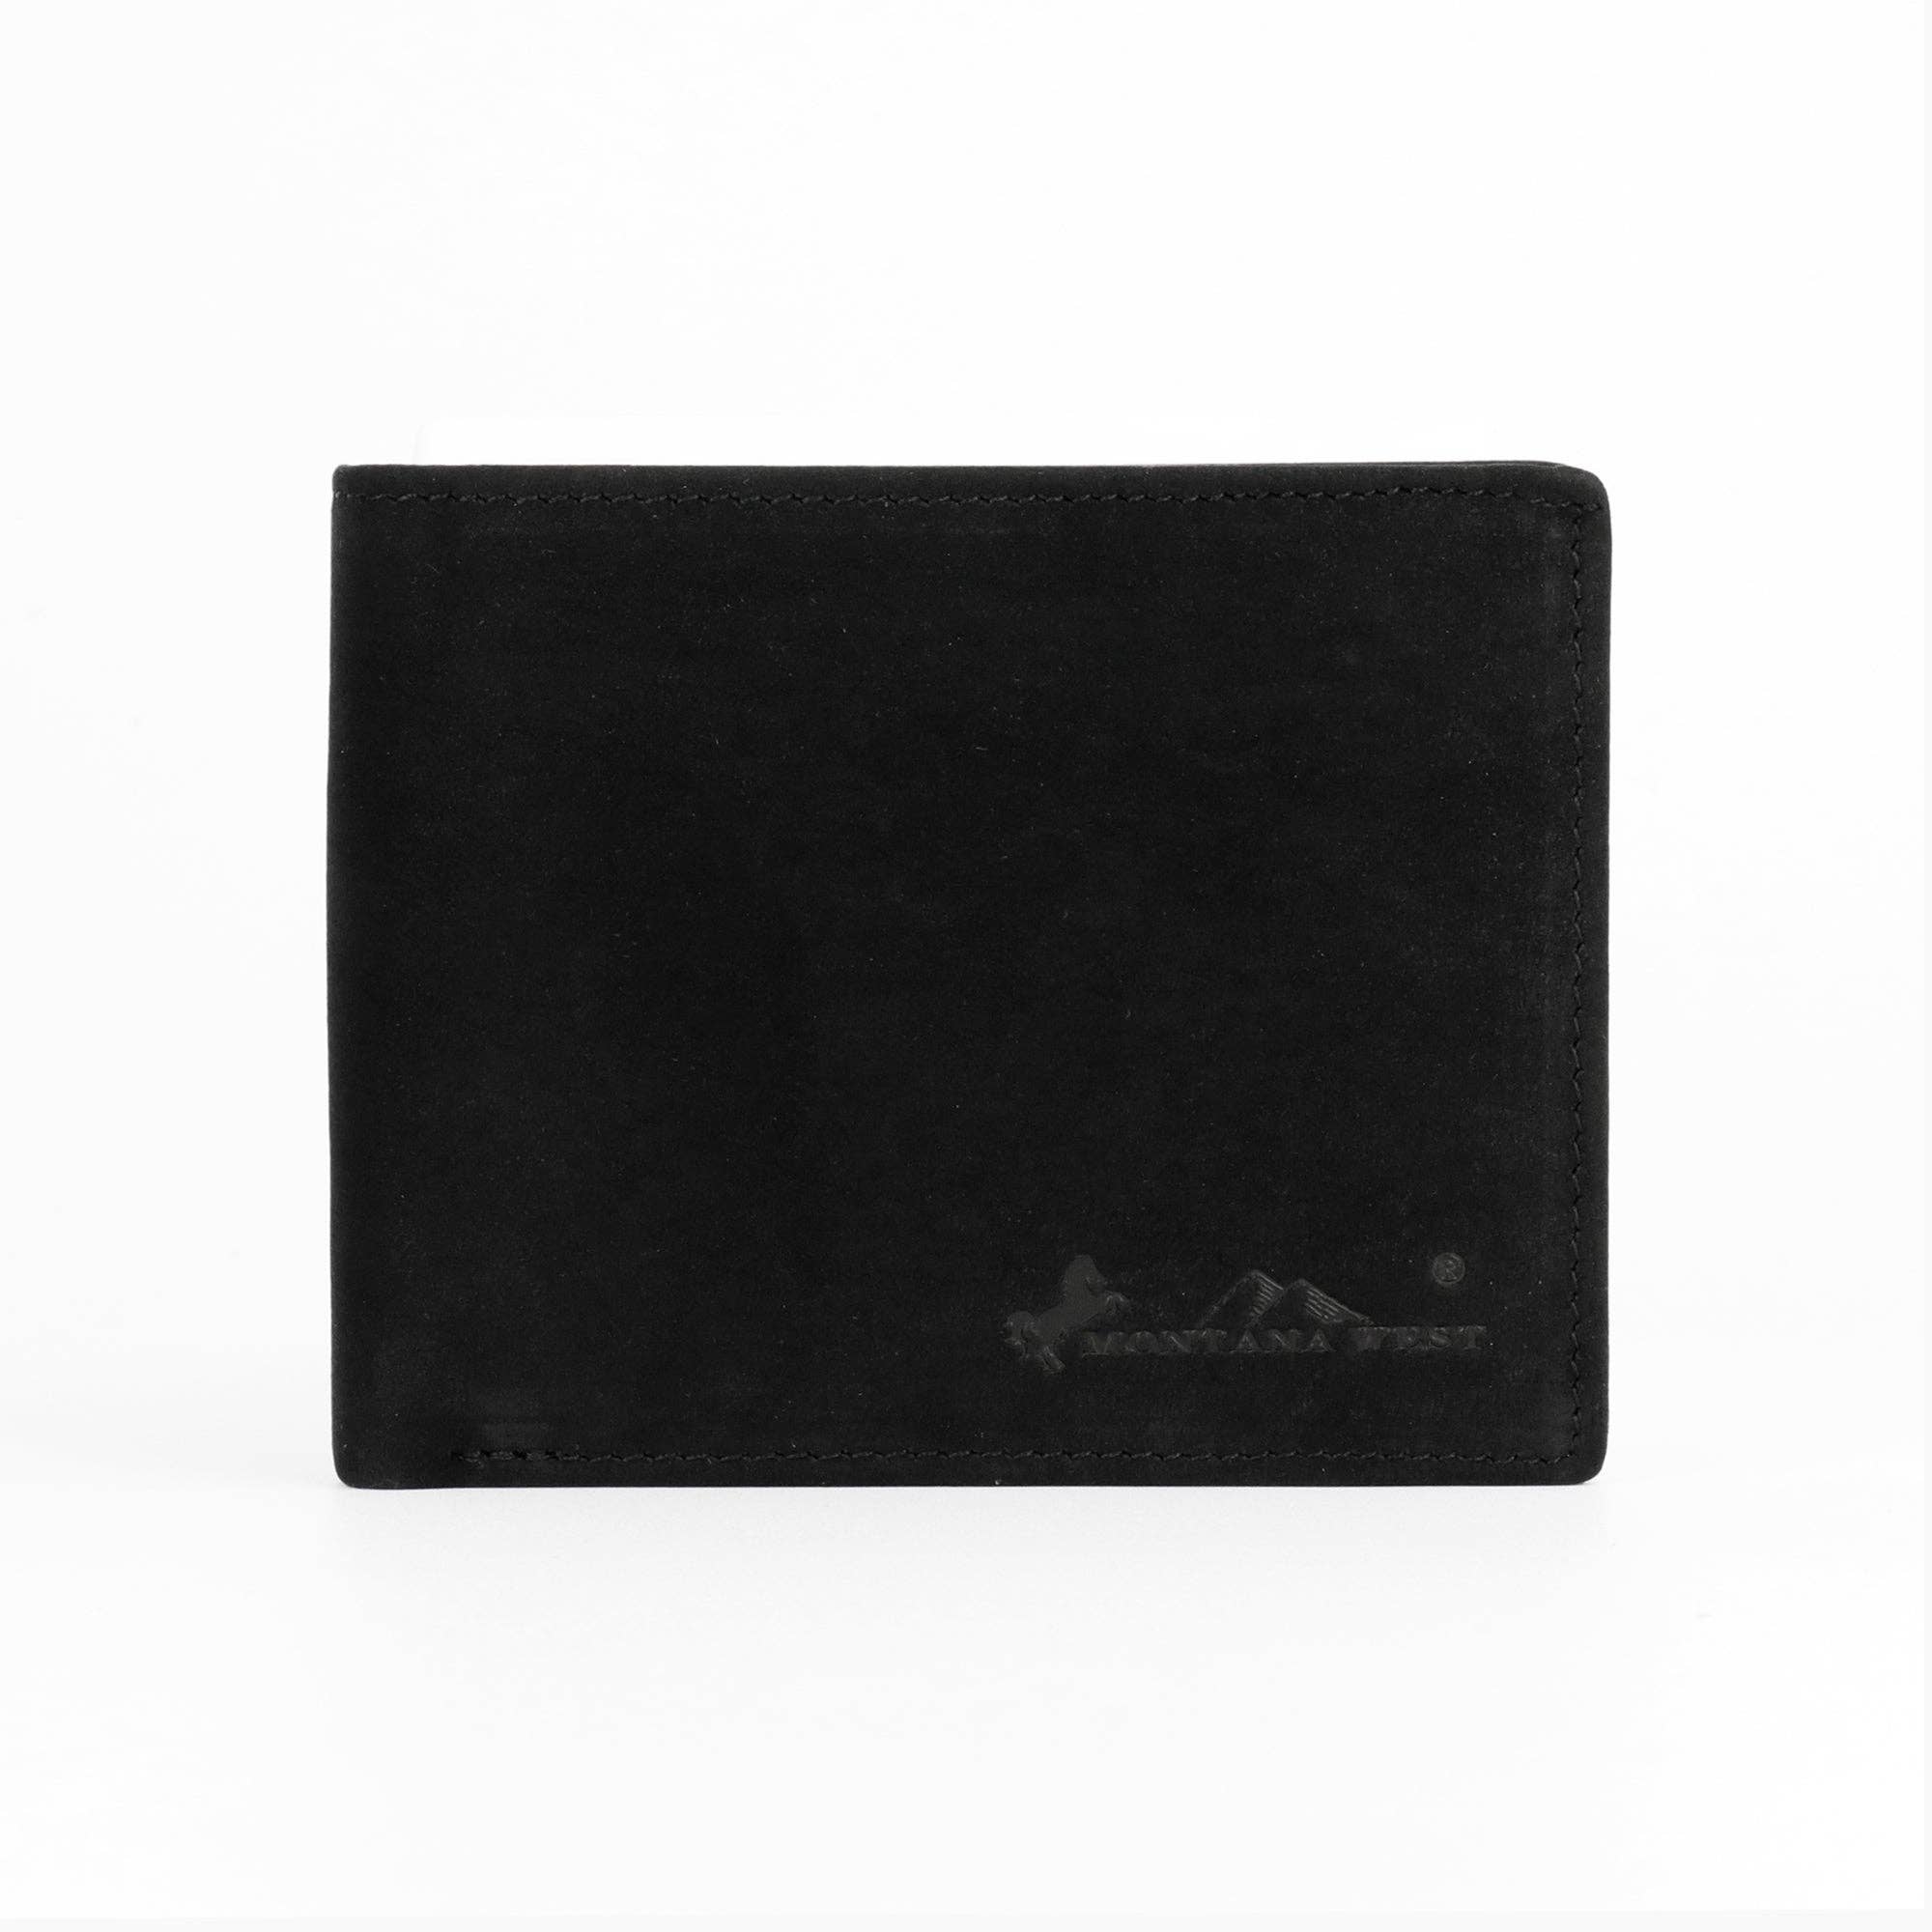 RFID-W002 Genuine Leather Men's Bi-Fold Wallet